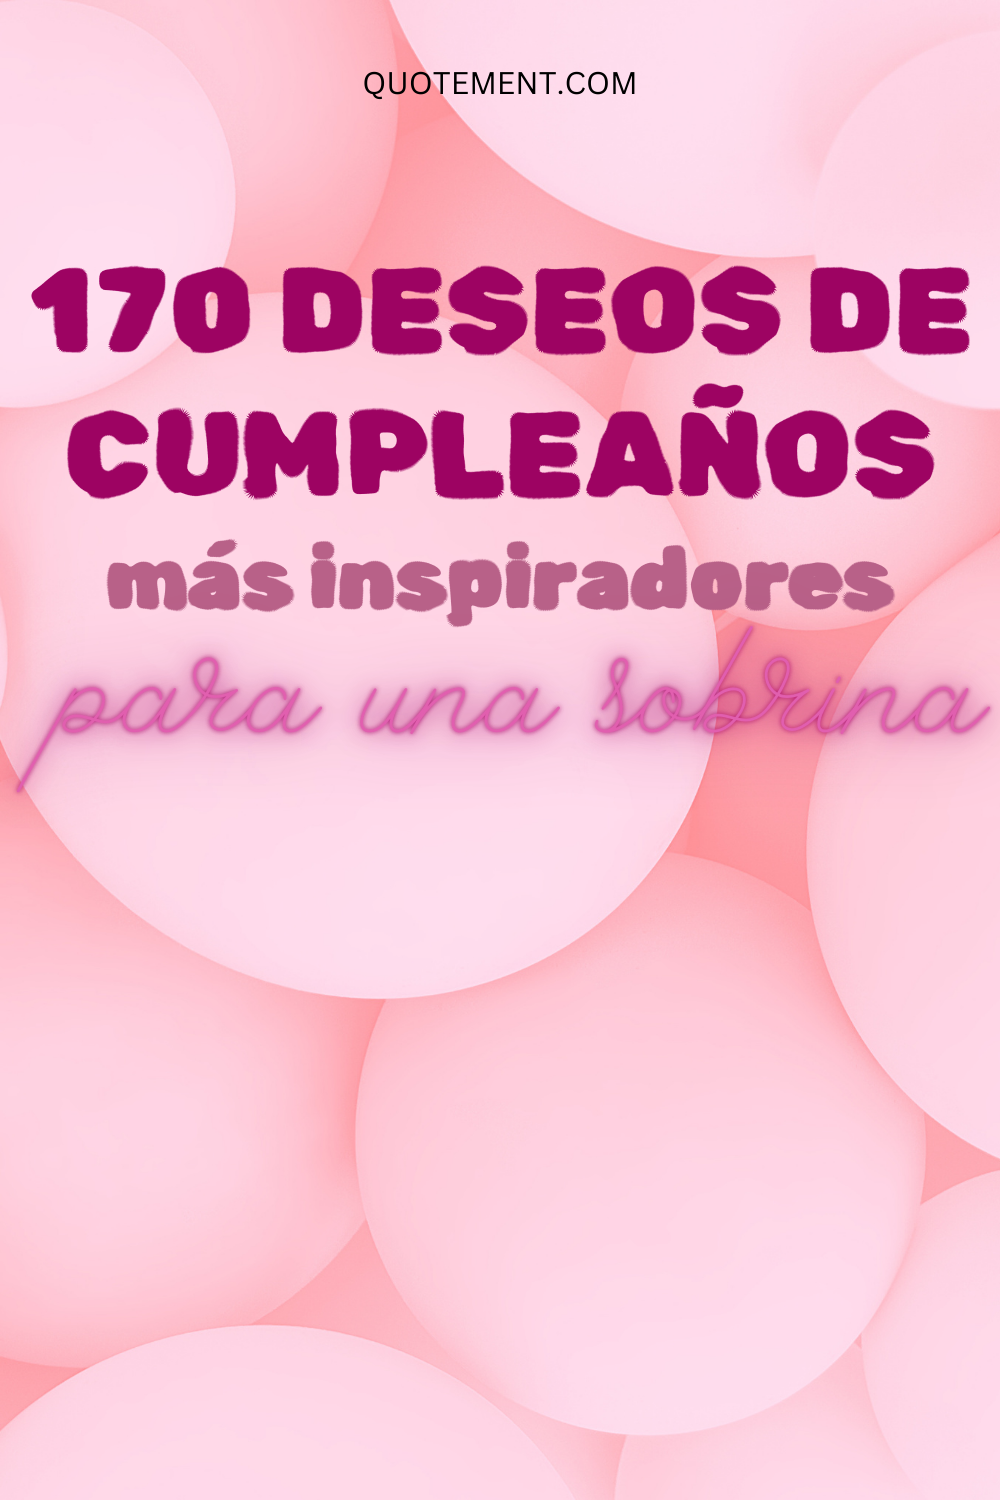 Los 170 deseos de cumpleaños más inspiradores para una sobrina